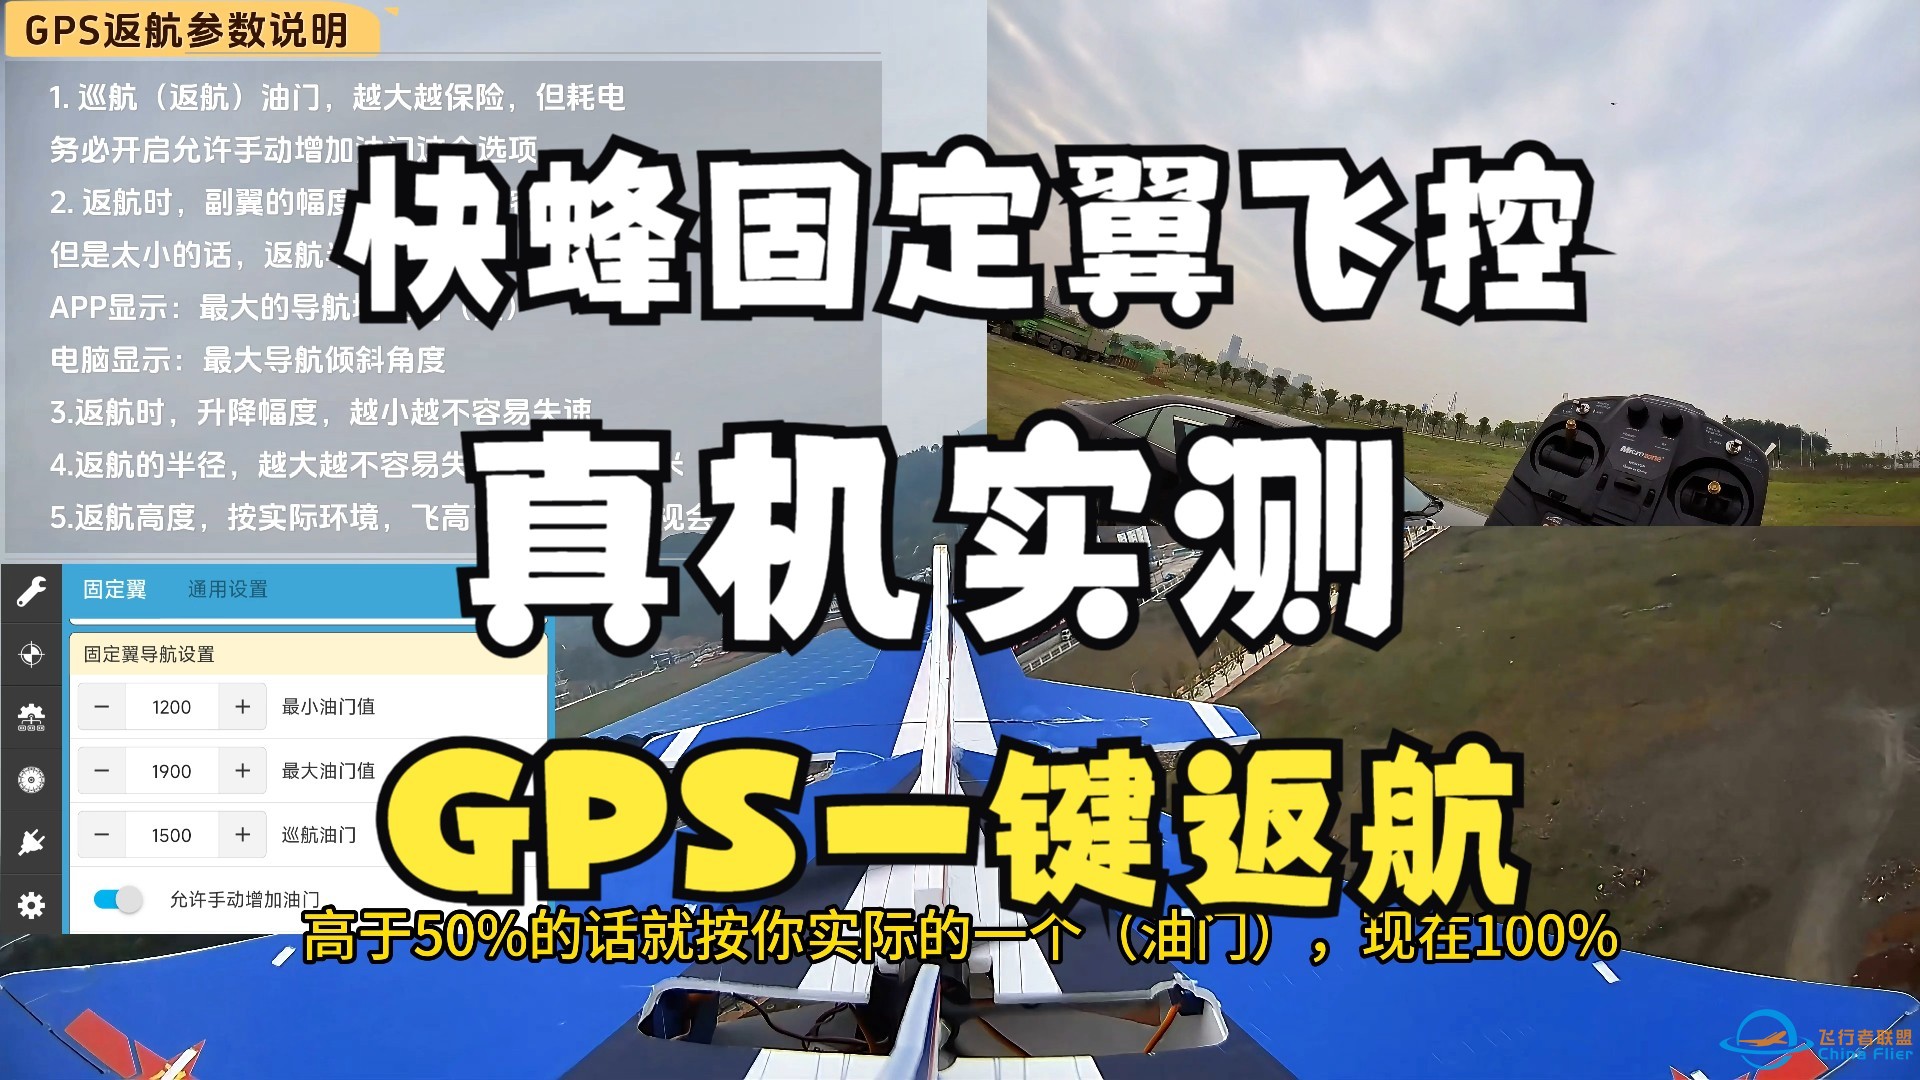 航模GPS一键返航功能，真机实测 speedybee快蜂F405wing mini固定翼飞控-1.jpg